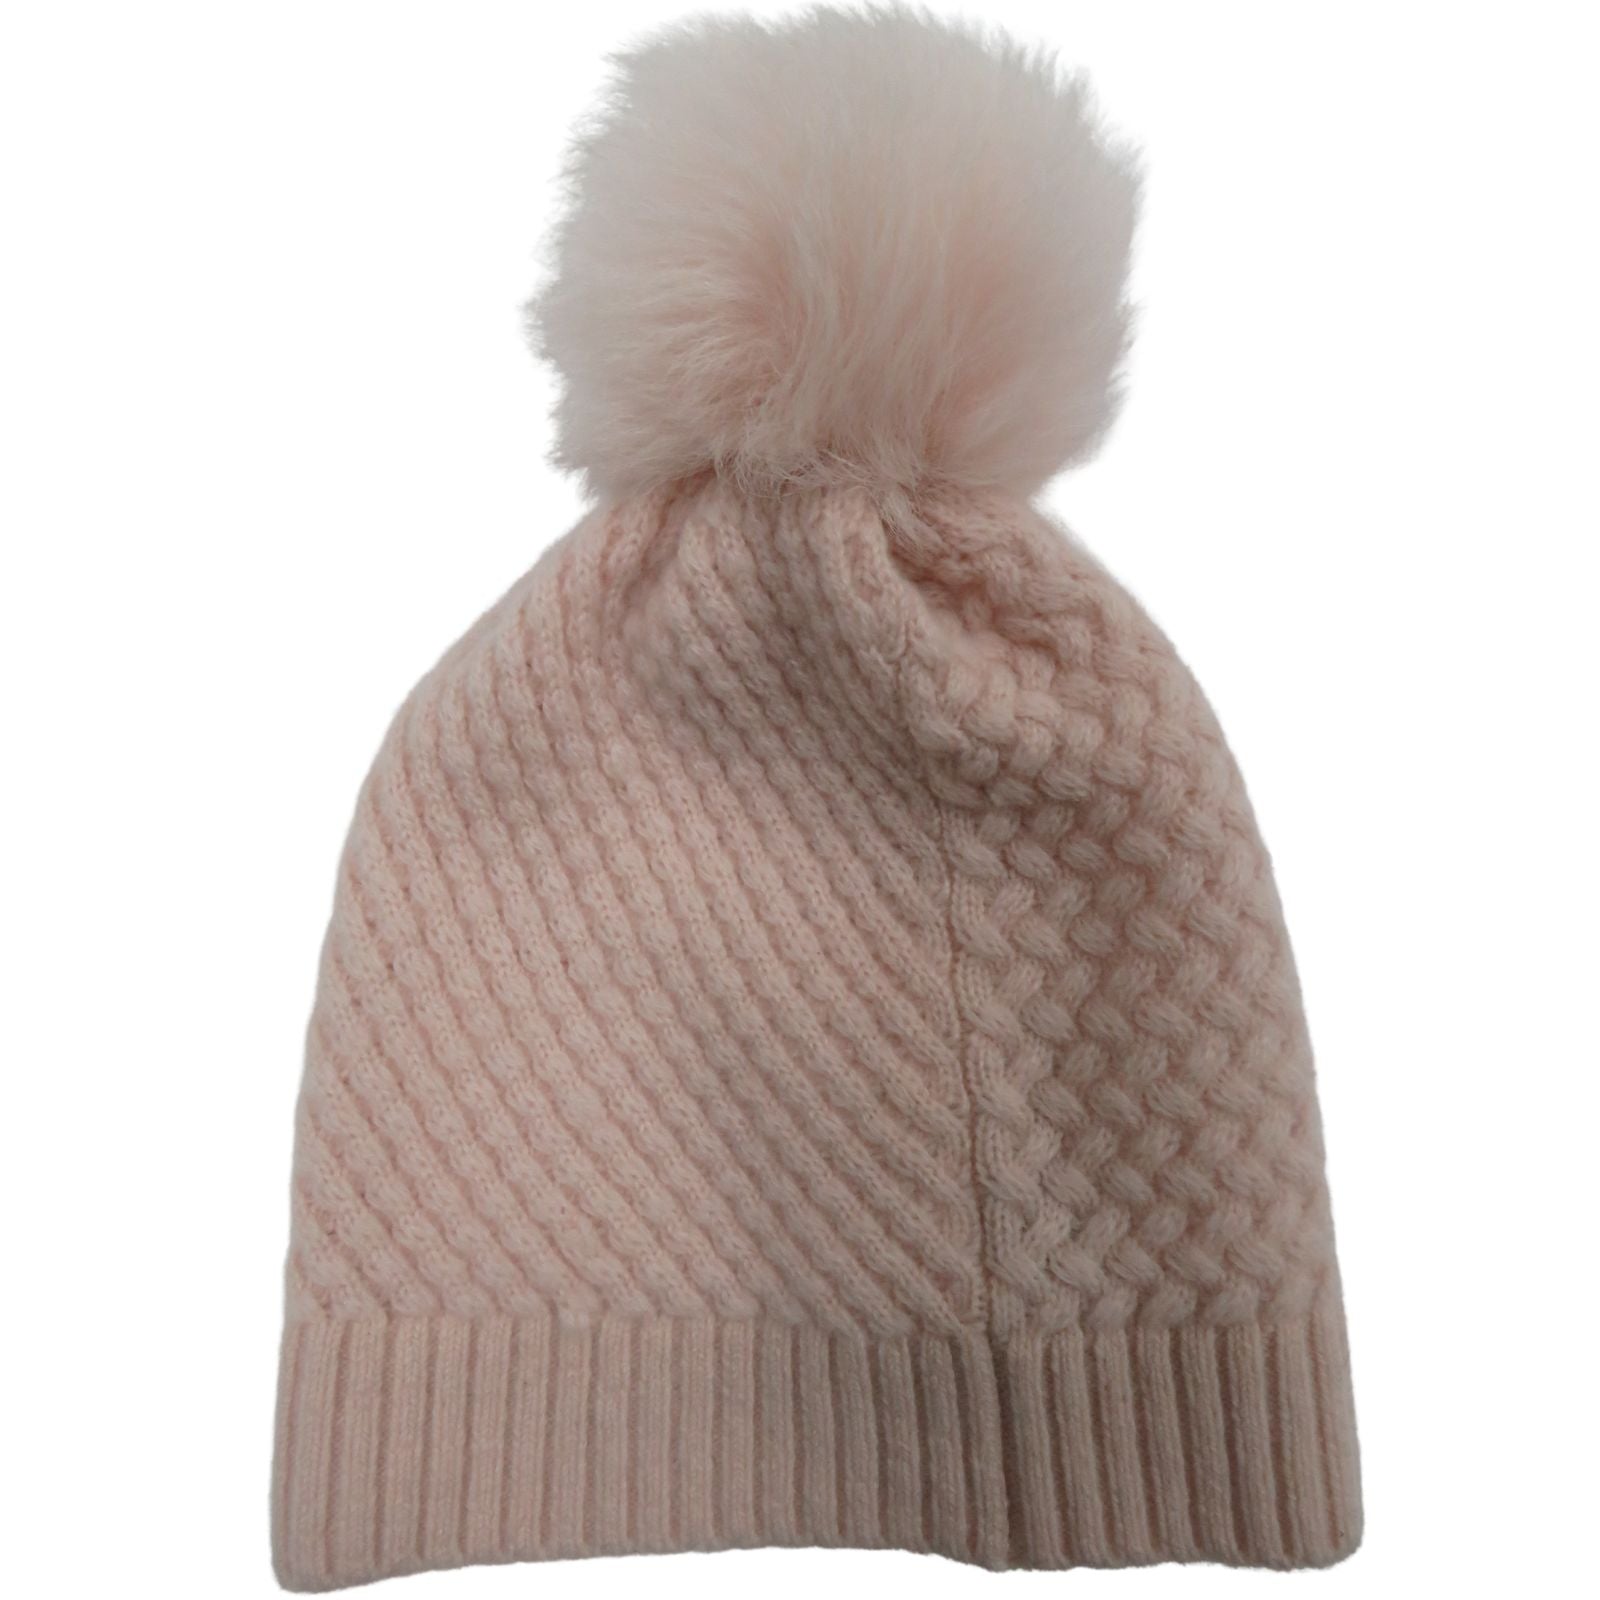 Multitextured Pattern Hat, Soft Pink